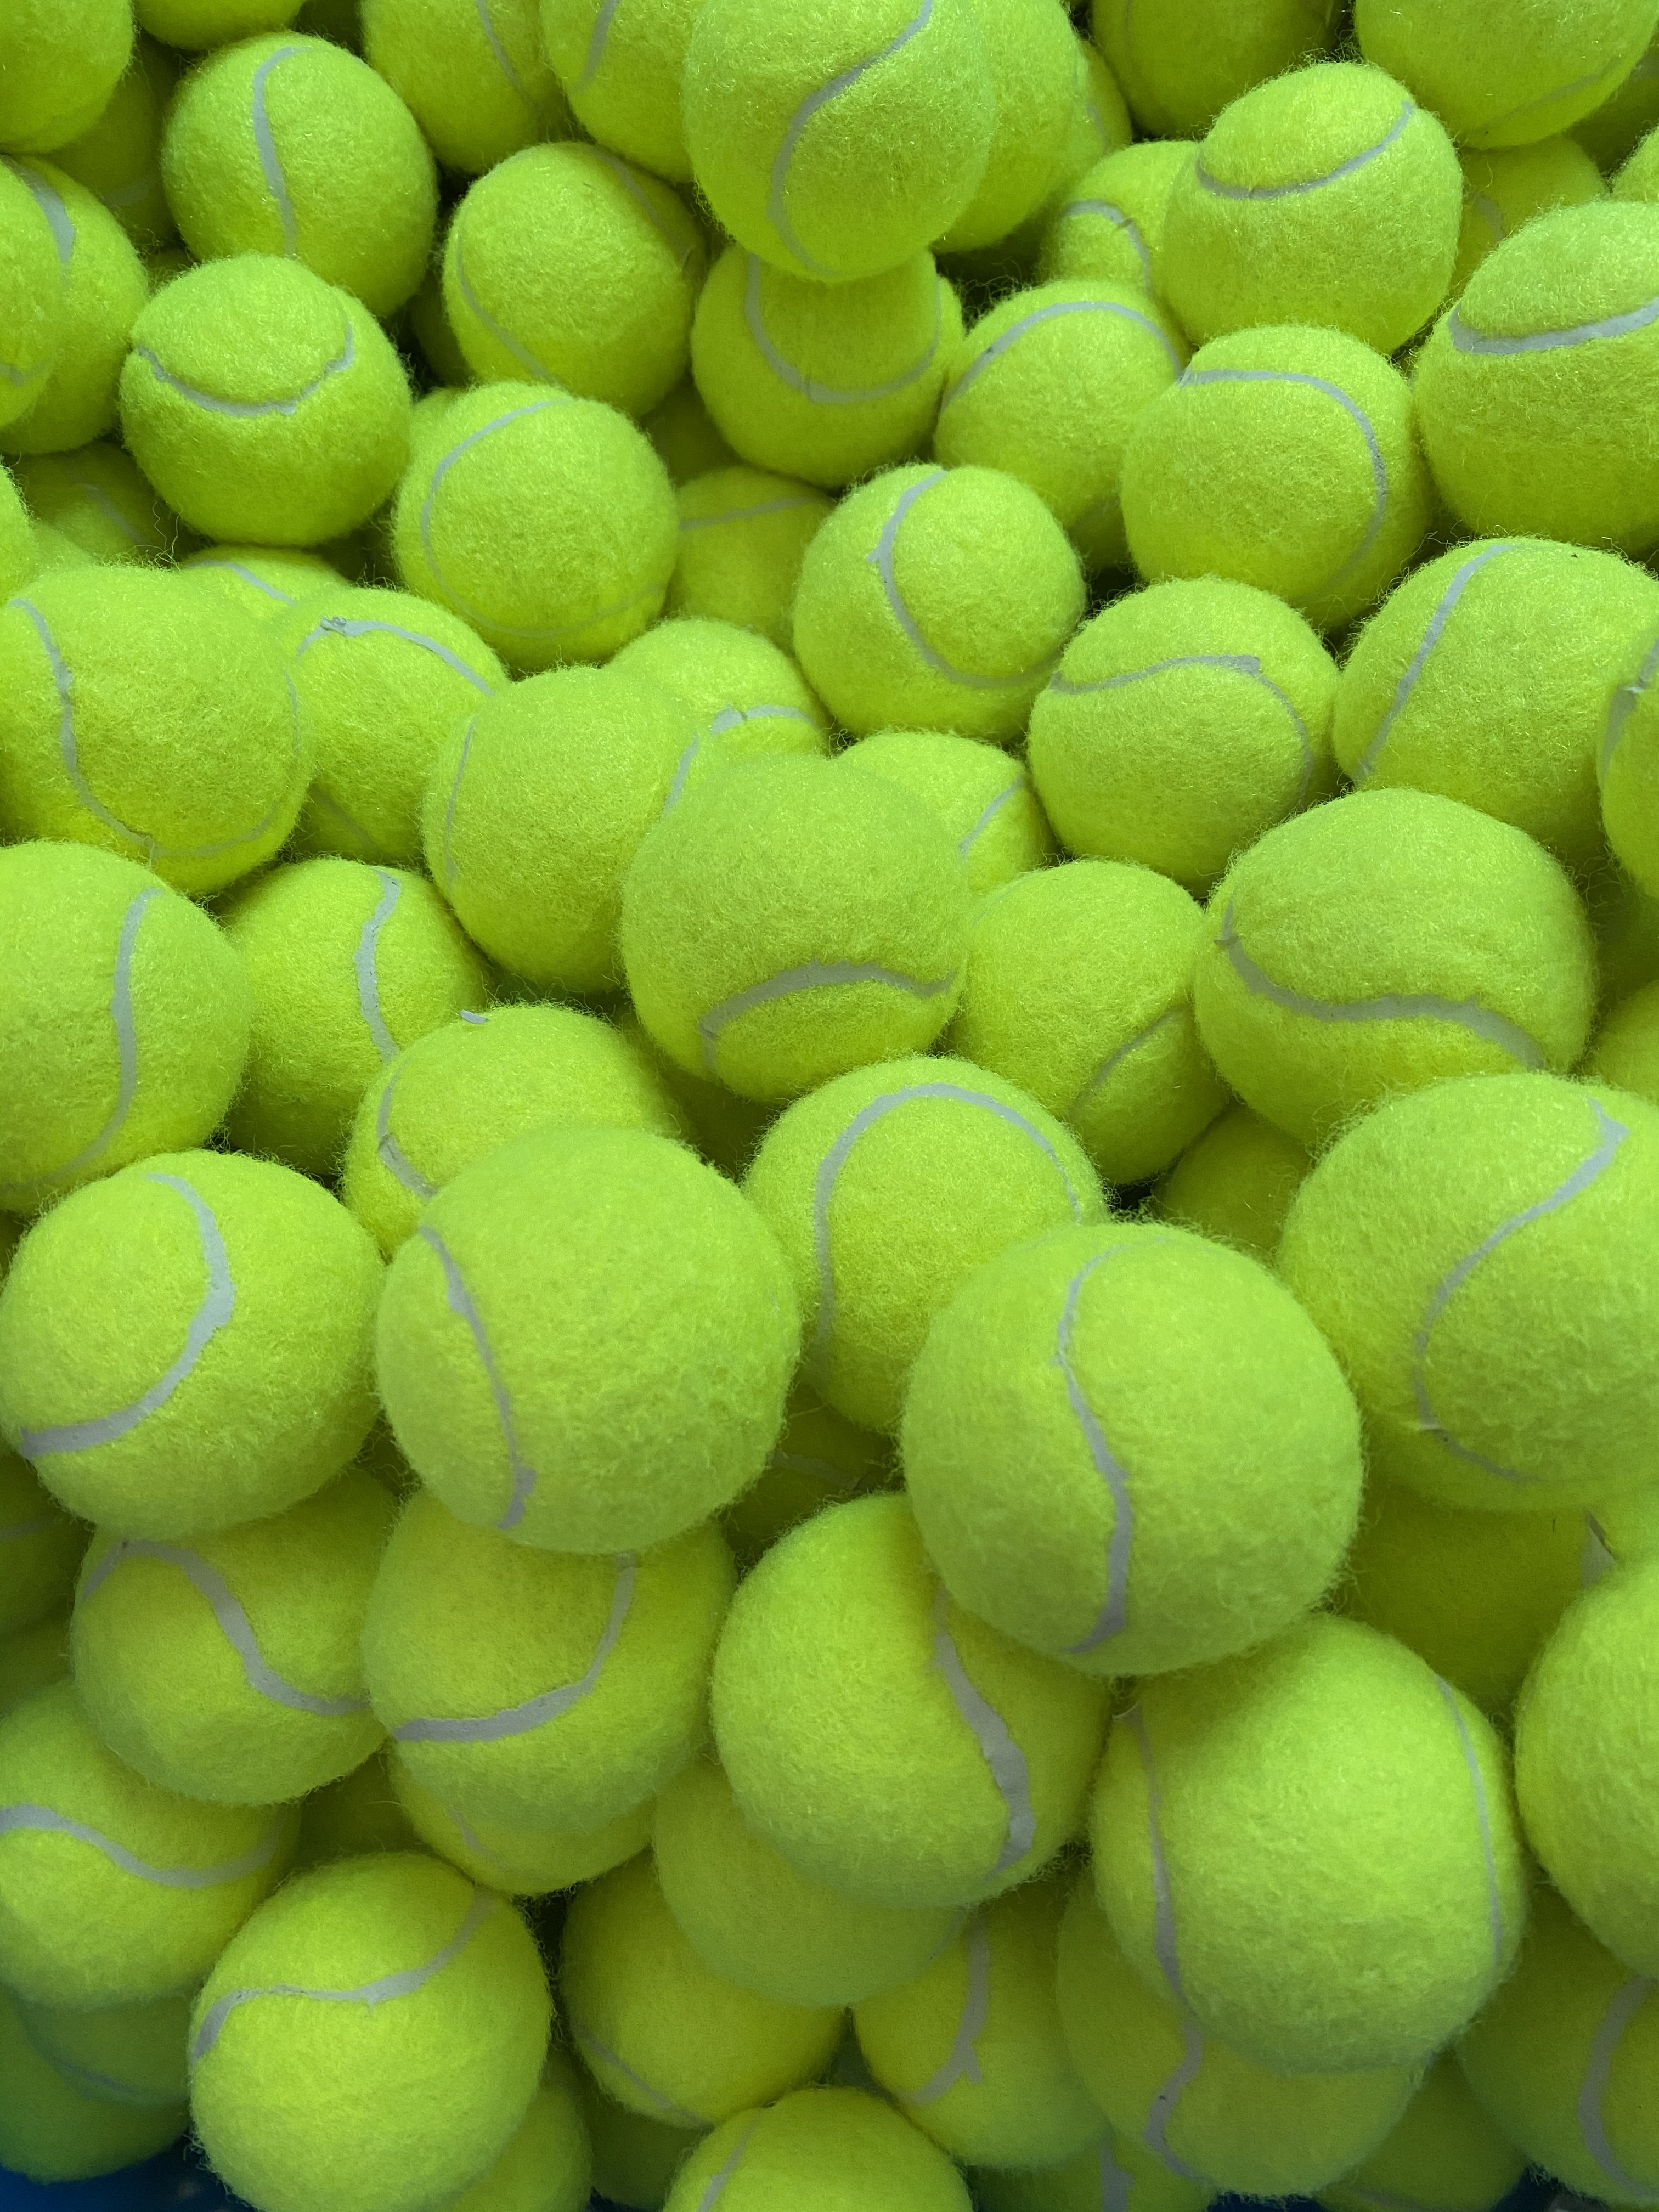 网球厂家供应一级练习网球 1米弹力训练网球 比赛训练化纤网球产品图